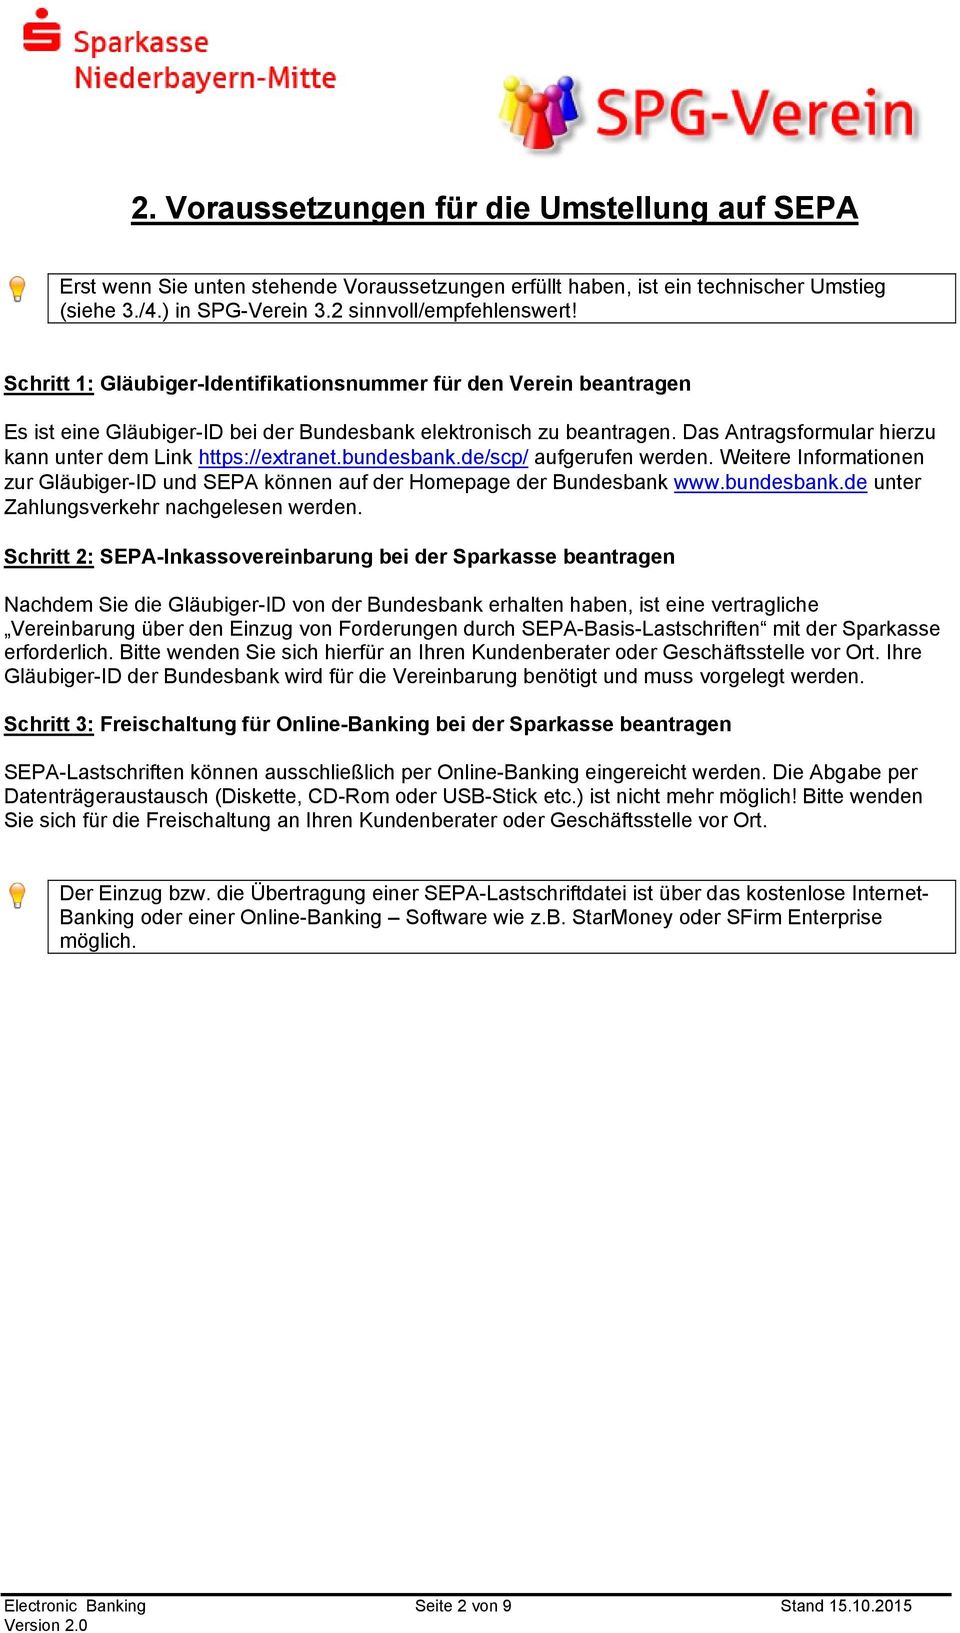 Das Antragsformular hierzu kann unter dem Link https://extranet.bundesbank.de/scp/ aufgerufen werden. Weitere Informationen zur Gläubiger-ID und SEPA können auf der Homepage der Bundesbank www.